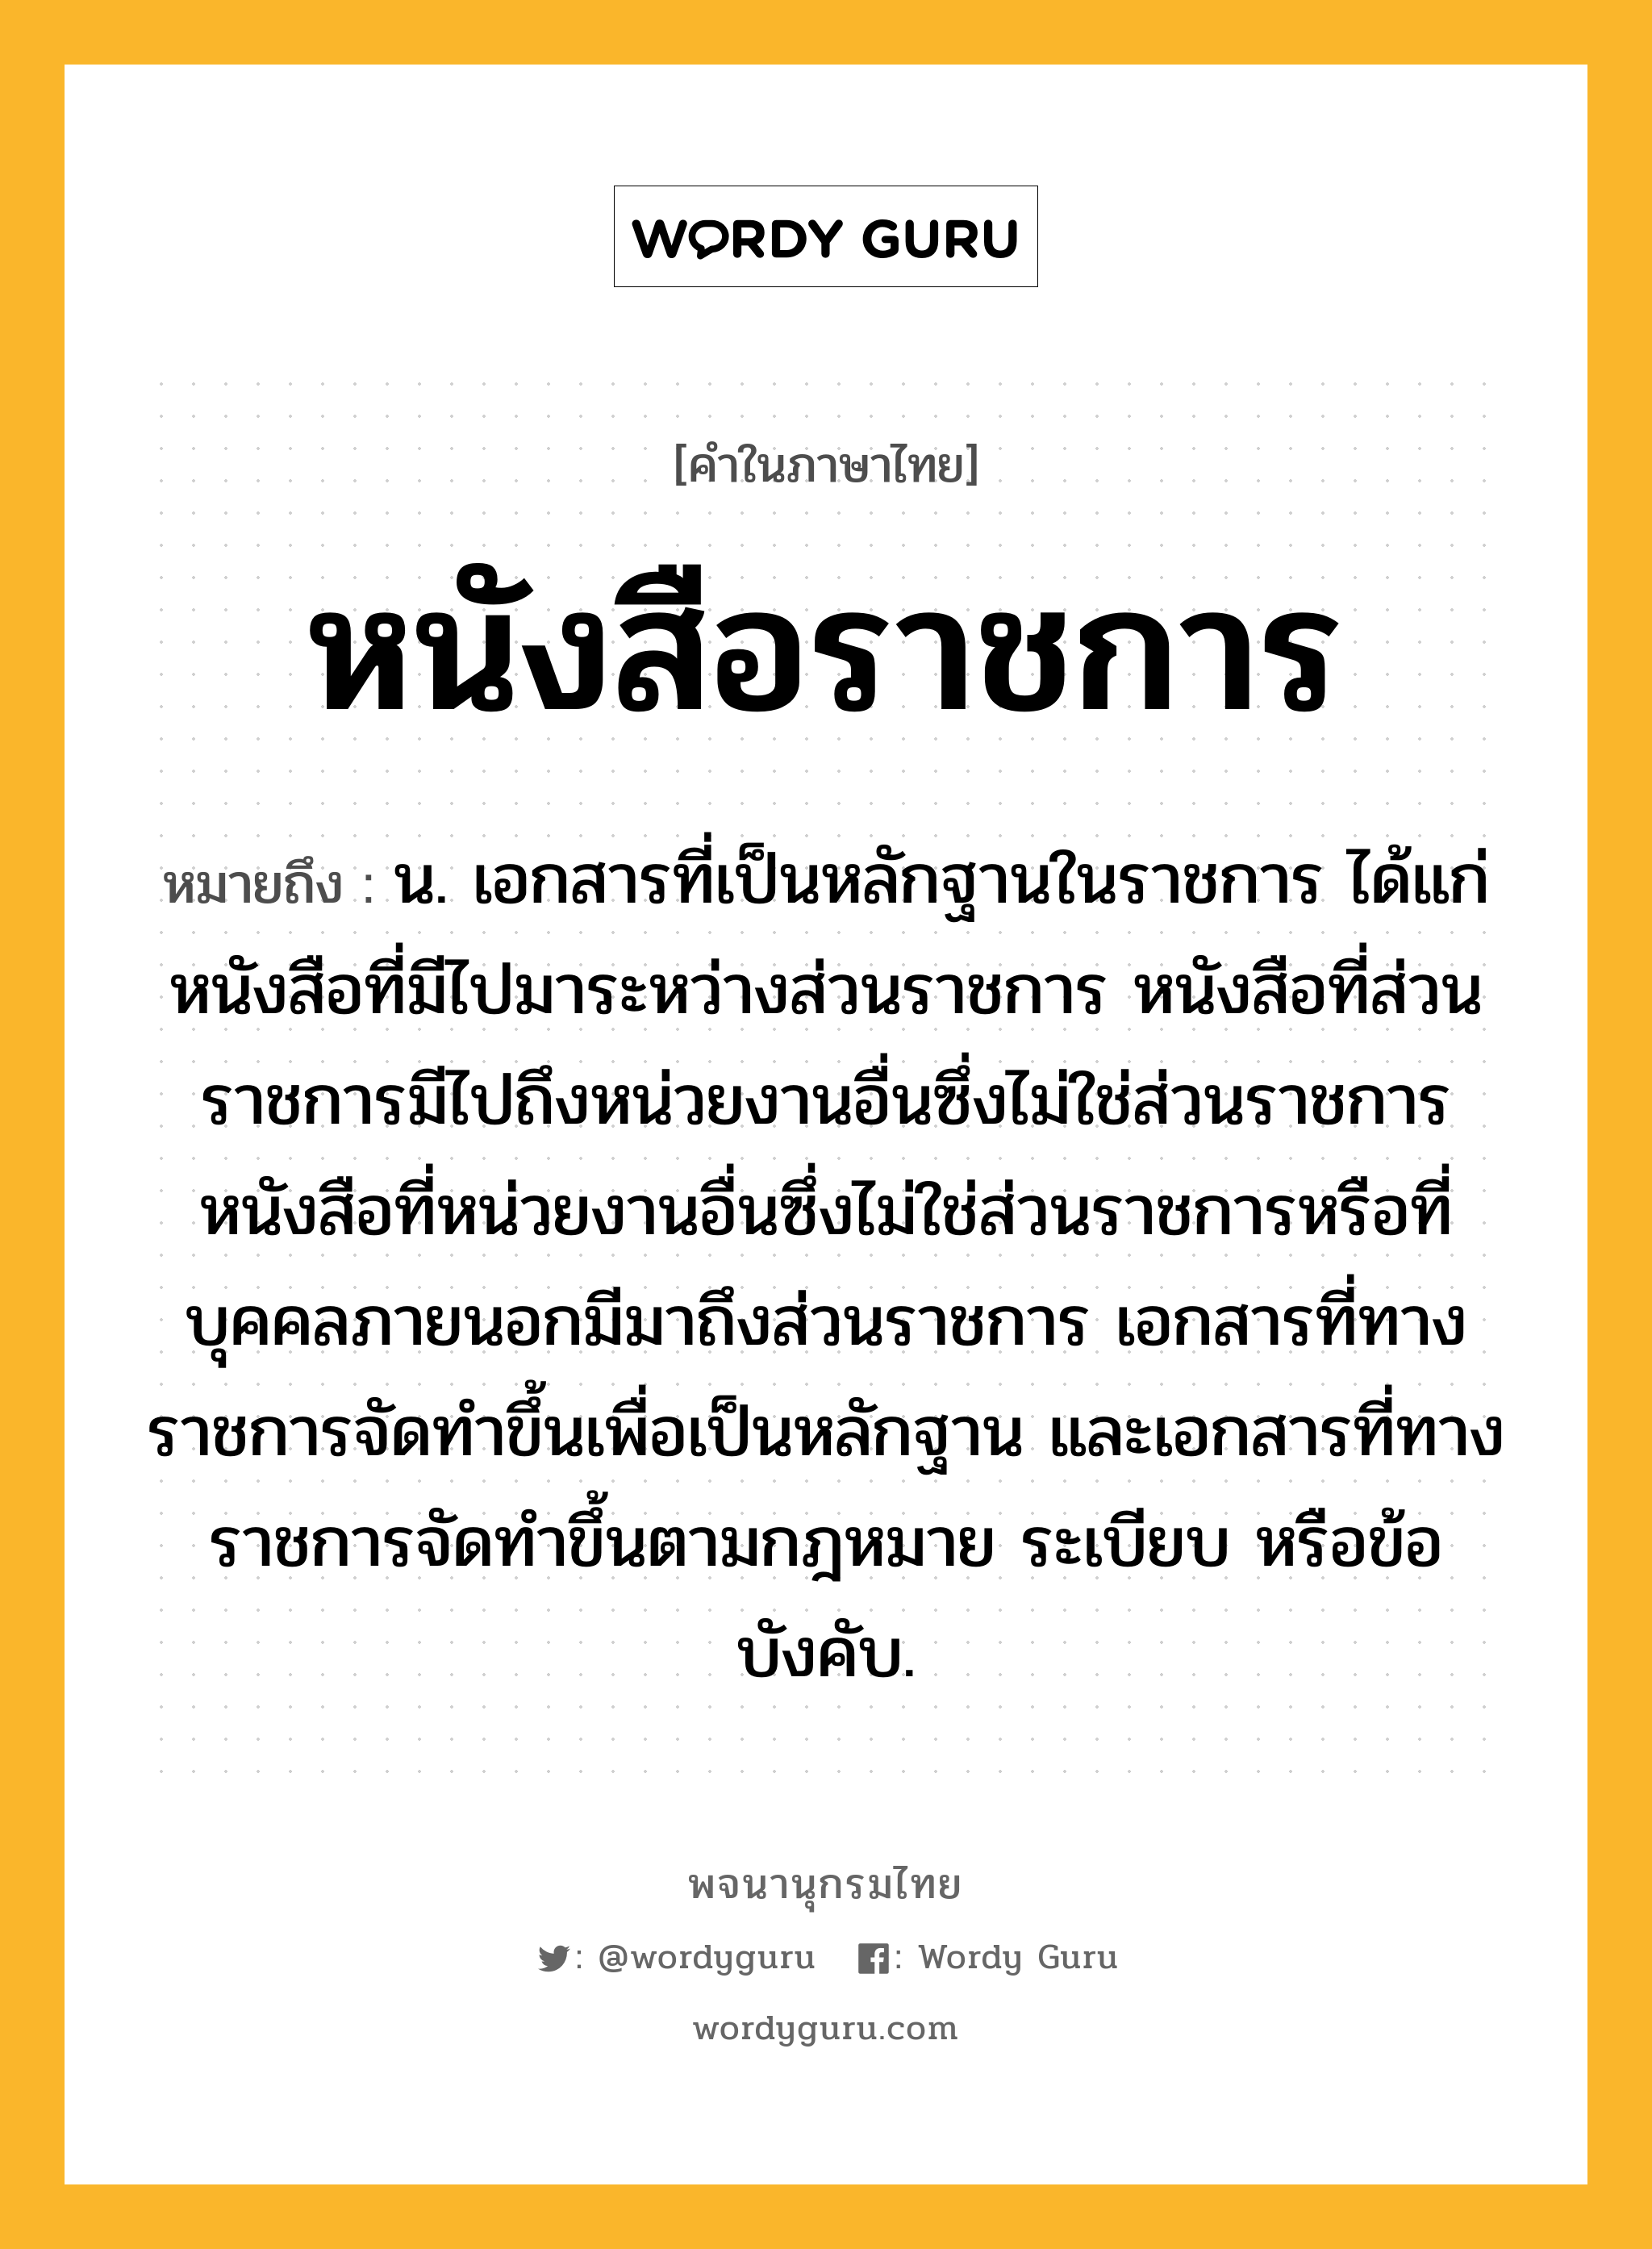 หนังสือราชการ ความหมาย หมายถึงอะไร?, คำในภาษาไทย หนังสือราชการ หมายถึง น. เอกสารที่เป็นหลักฐานในราชการ ได้แก่ หนังสือที่มีไปมาระหว่างส่วนราชการ หนังสือที่ส่วนราชการมีไปถึงหน่วยงานอื่นซึ่งไม่ใช่ส่วนราชการ หนังสือที่หน่วยงานอื่นซึ่งไม่ใช่ส่วนราชการหรือที่บุคคลภายนอกมีมาถึงส่วนราชการ เอกสารที่ทางราชการจัดทำขึ้นเพื่อเป็นหลักฐาน และเอกสารที่ทางราชการจัดทำขึ้นตามกฎหมาย ระเบียบ หรือข้อบังคับ.